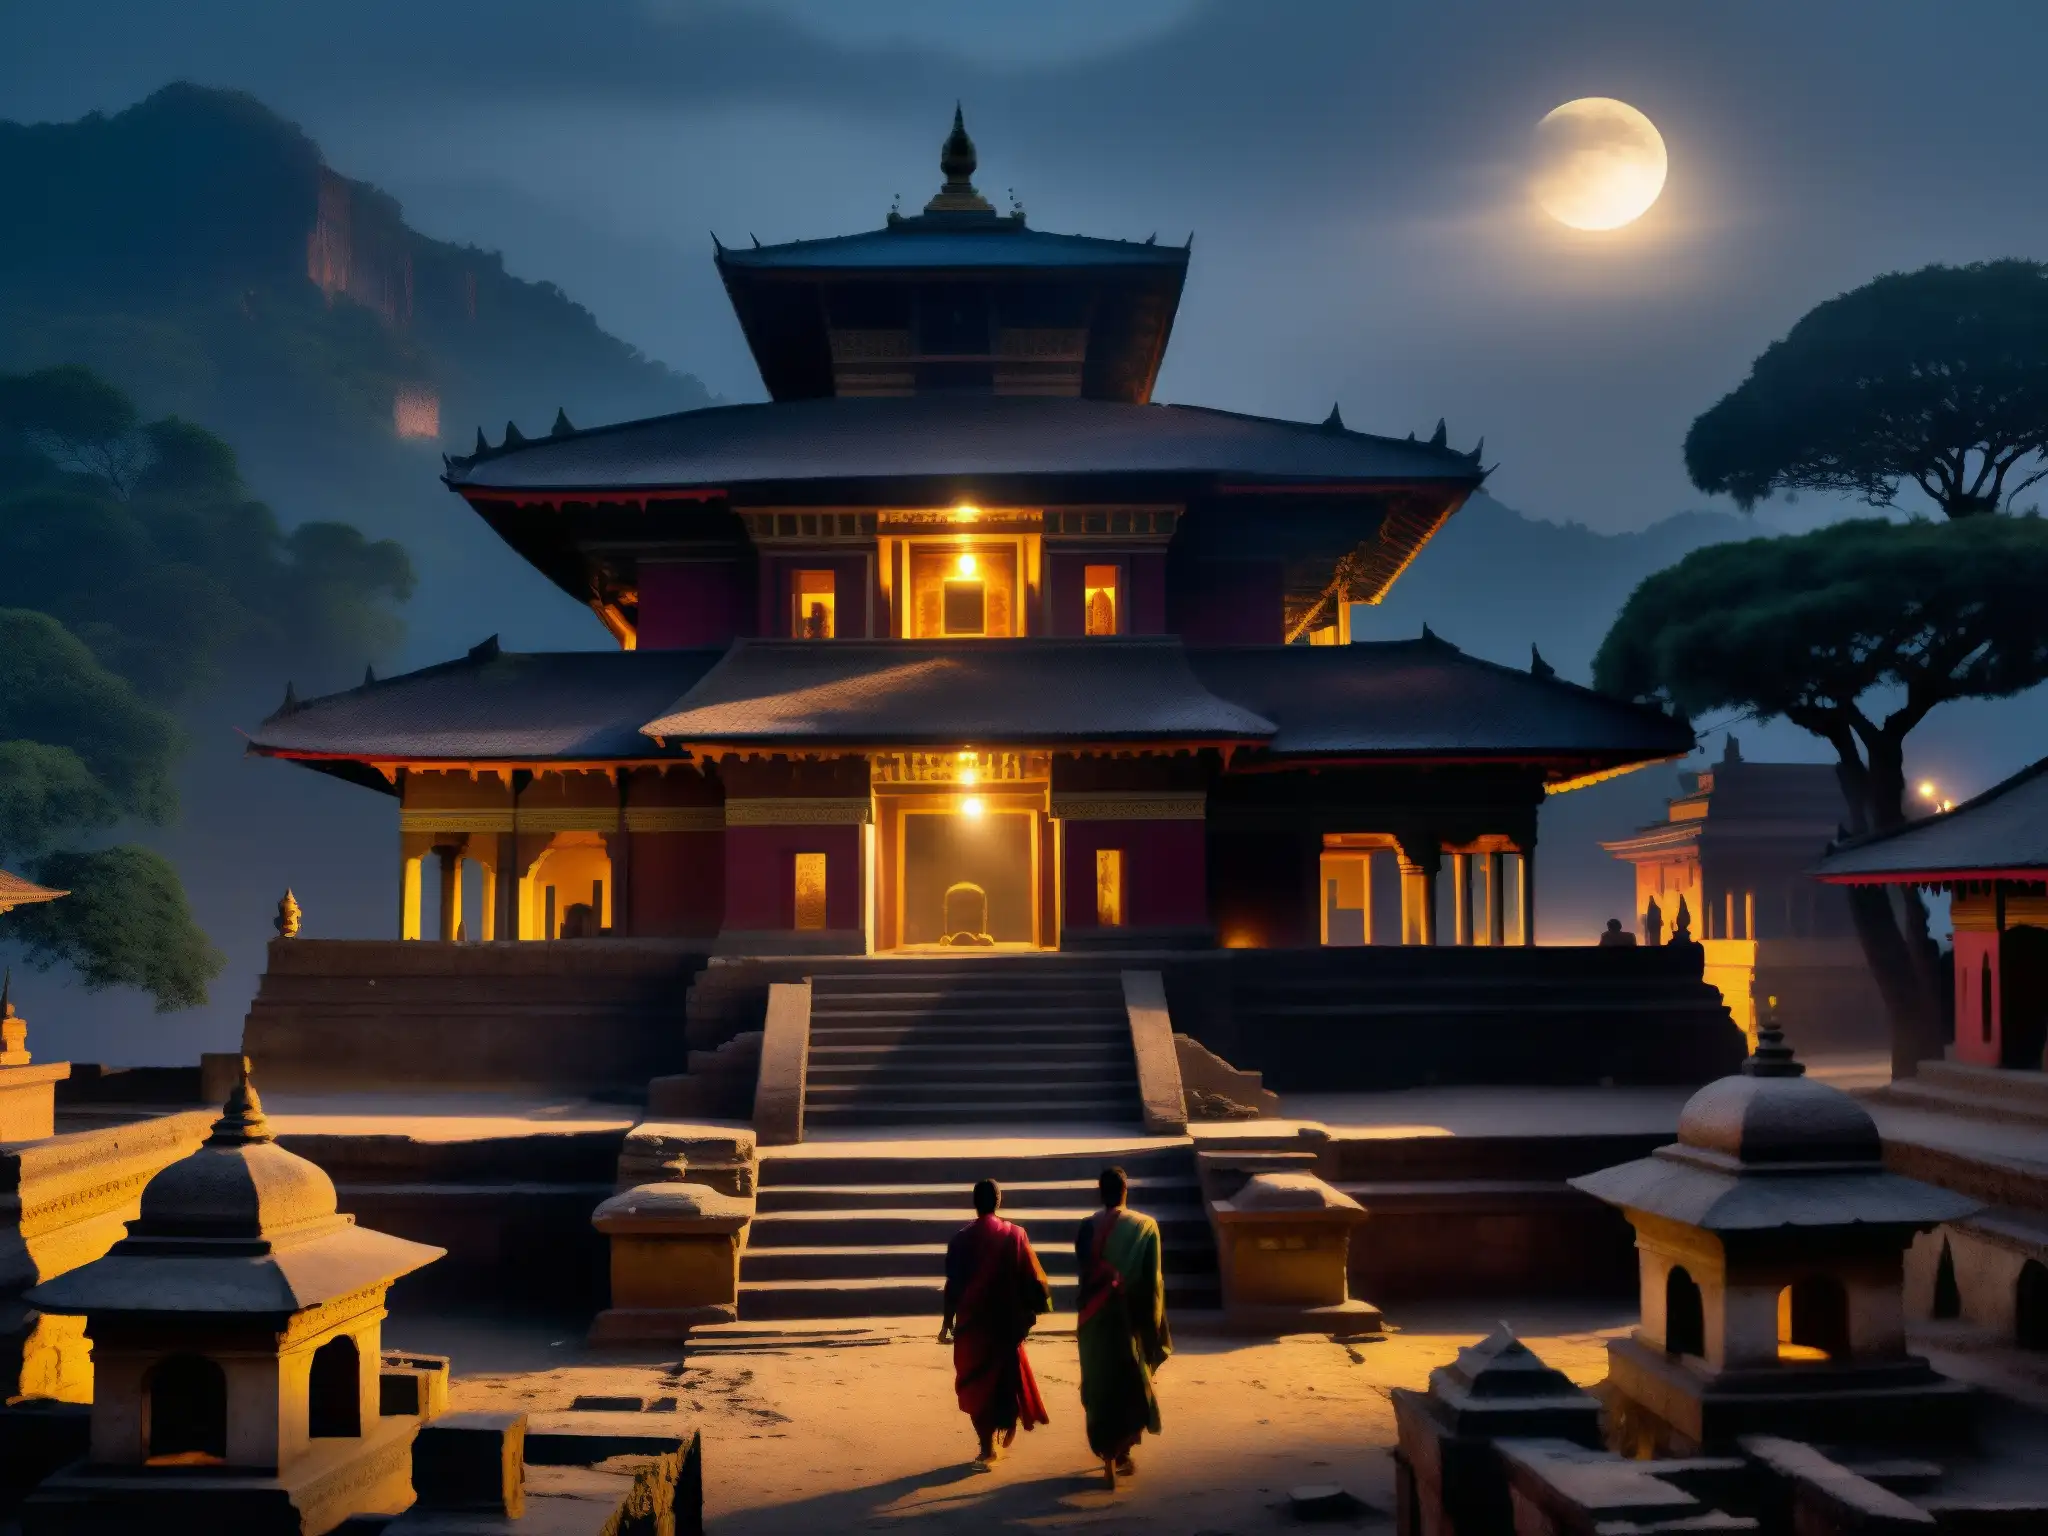 Vista misteriosa de palacios antiguos en Nepal, con figuras sombrías entre ruinas, evocando fenómenos paranormales